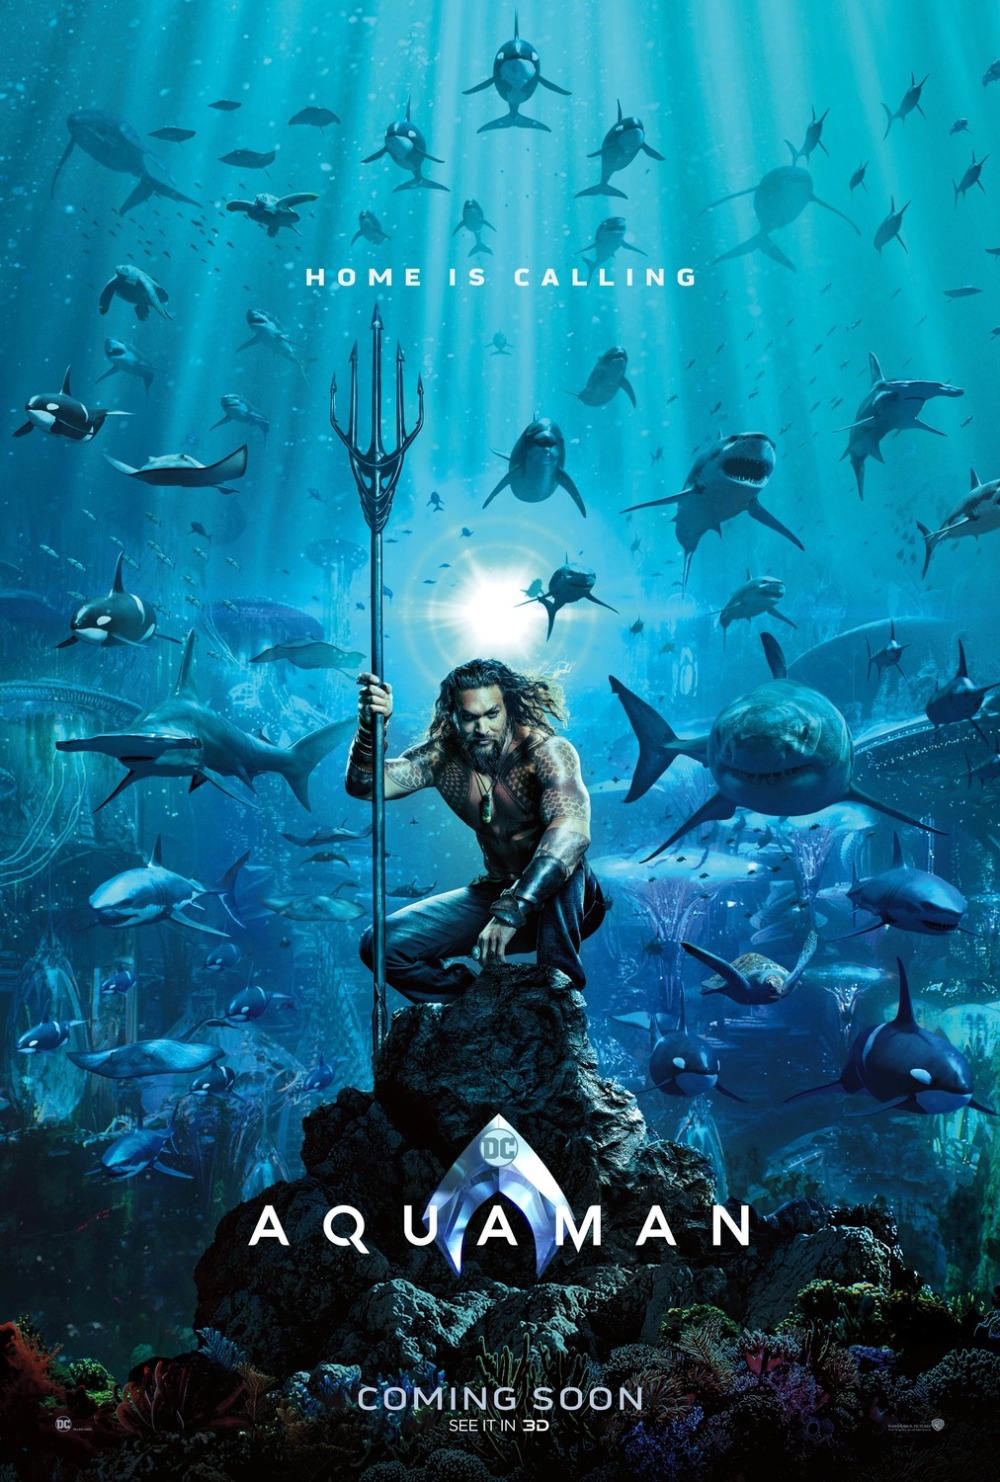 Aquaman teaser poster